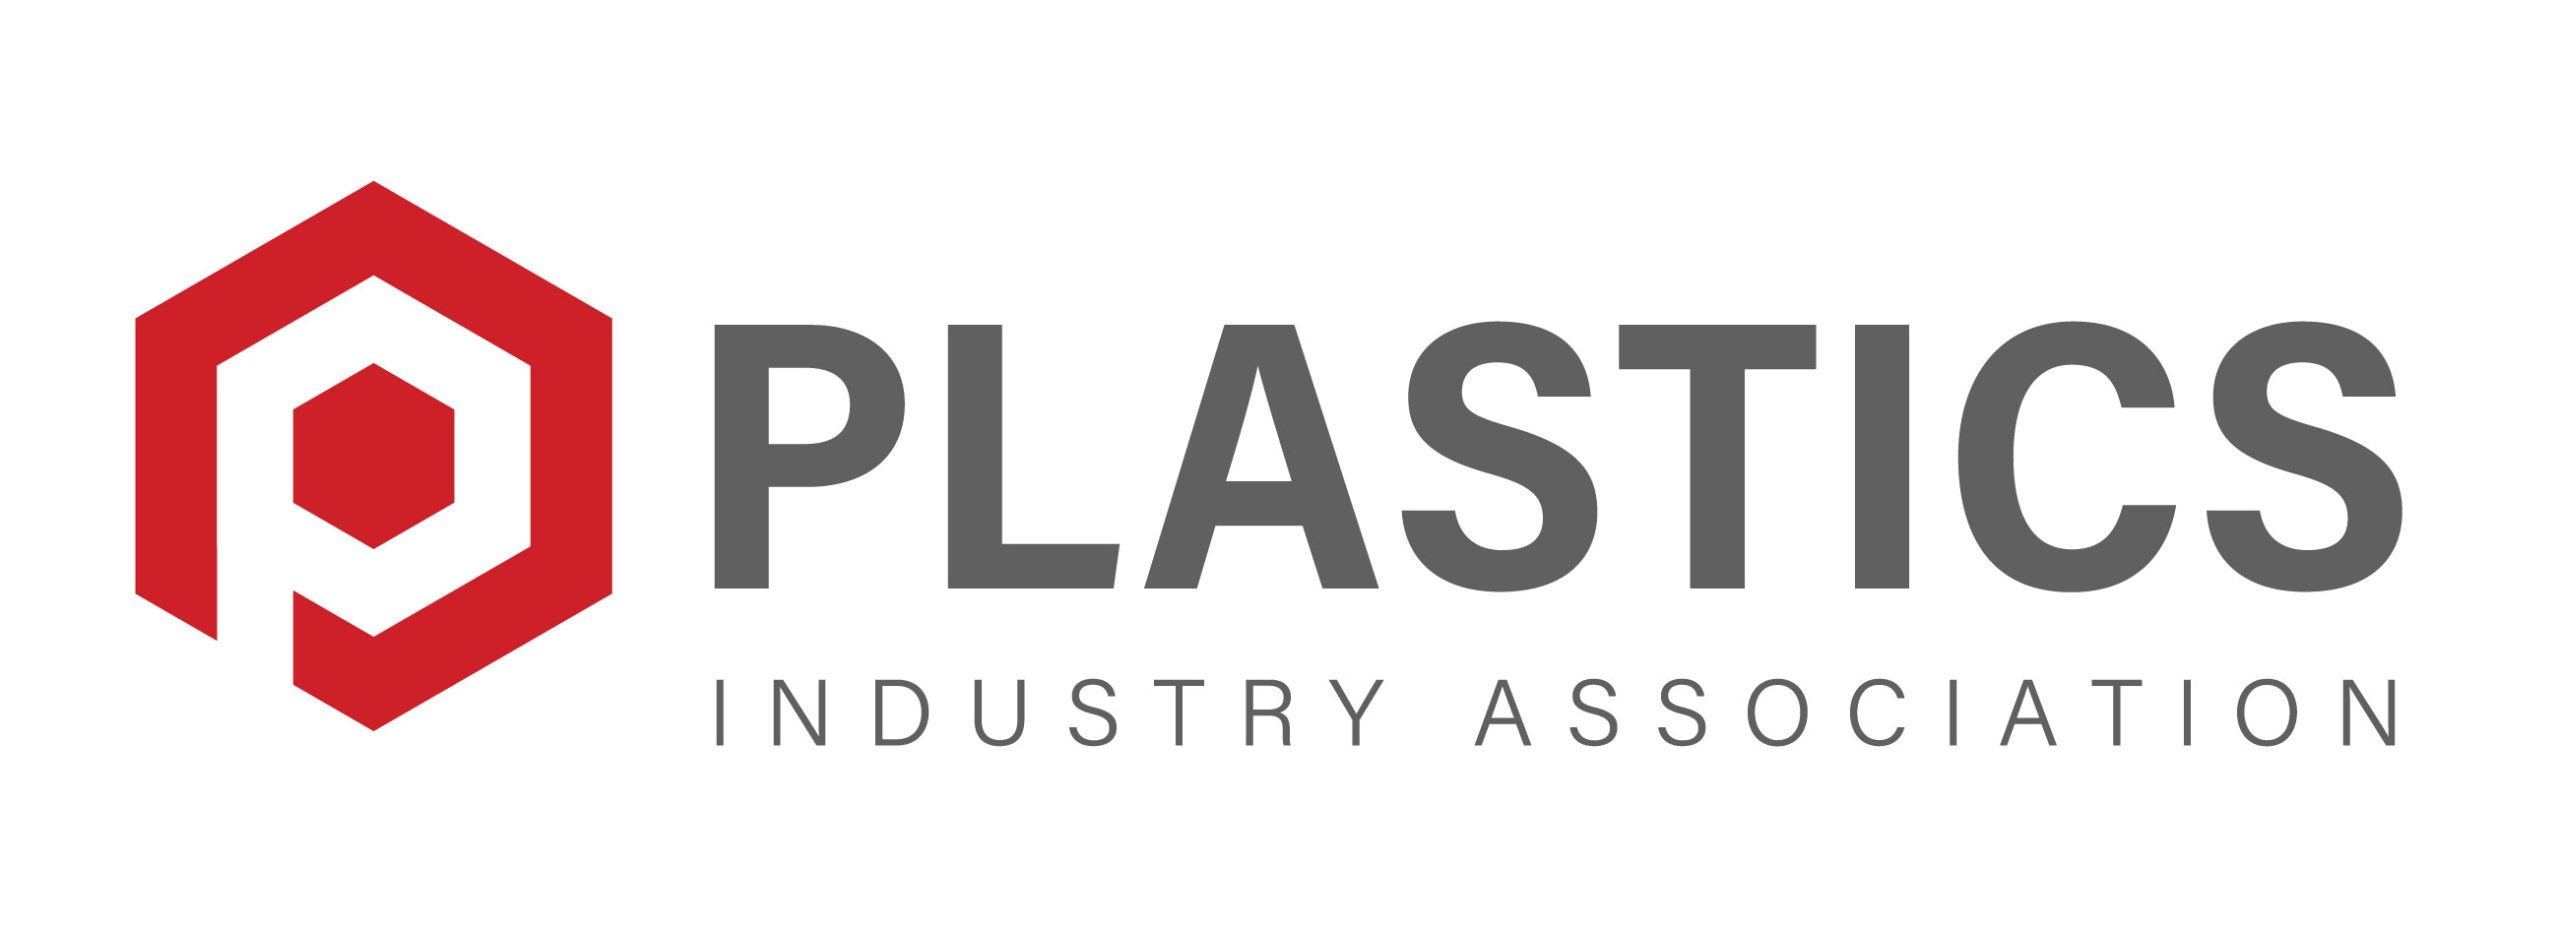 The Plastics Industry Association Logo - Full Color